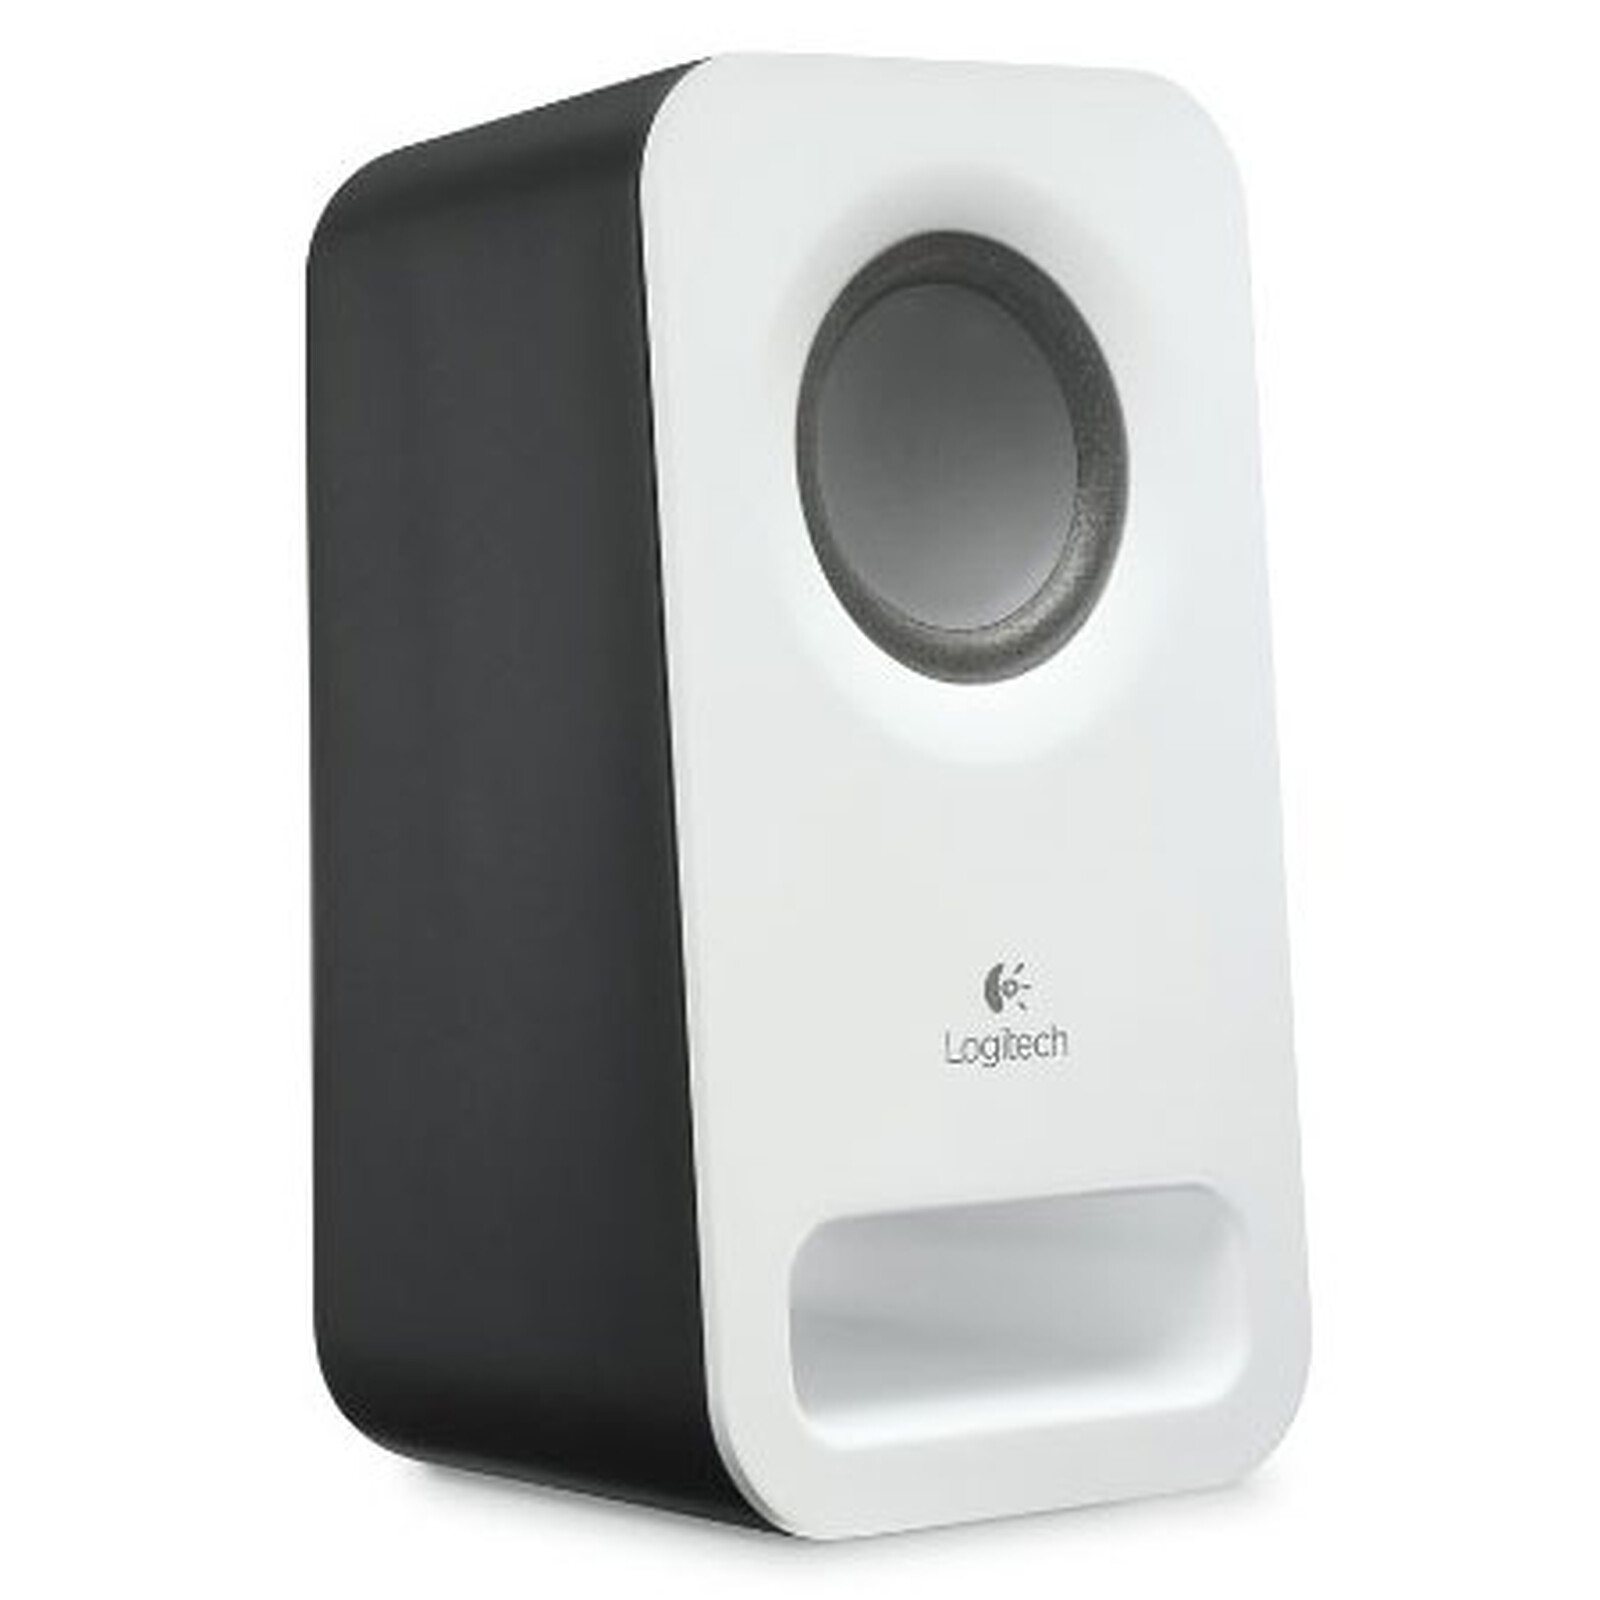 NZXT Relay Speakers (Blanc) - Enceinte PC - Garantie 3 ans LDLC